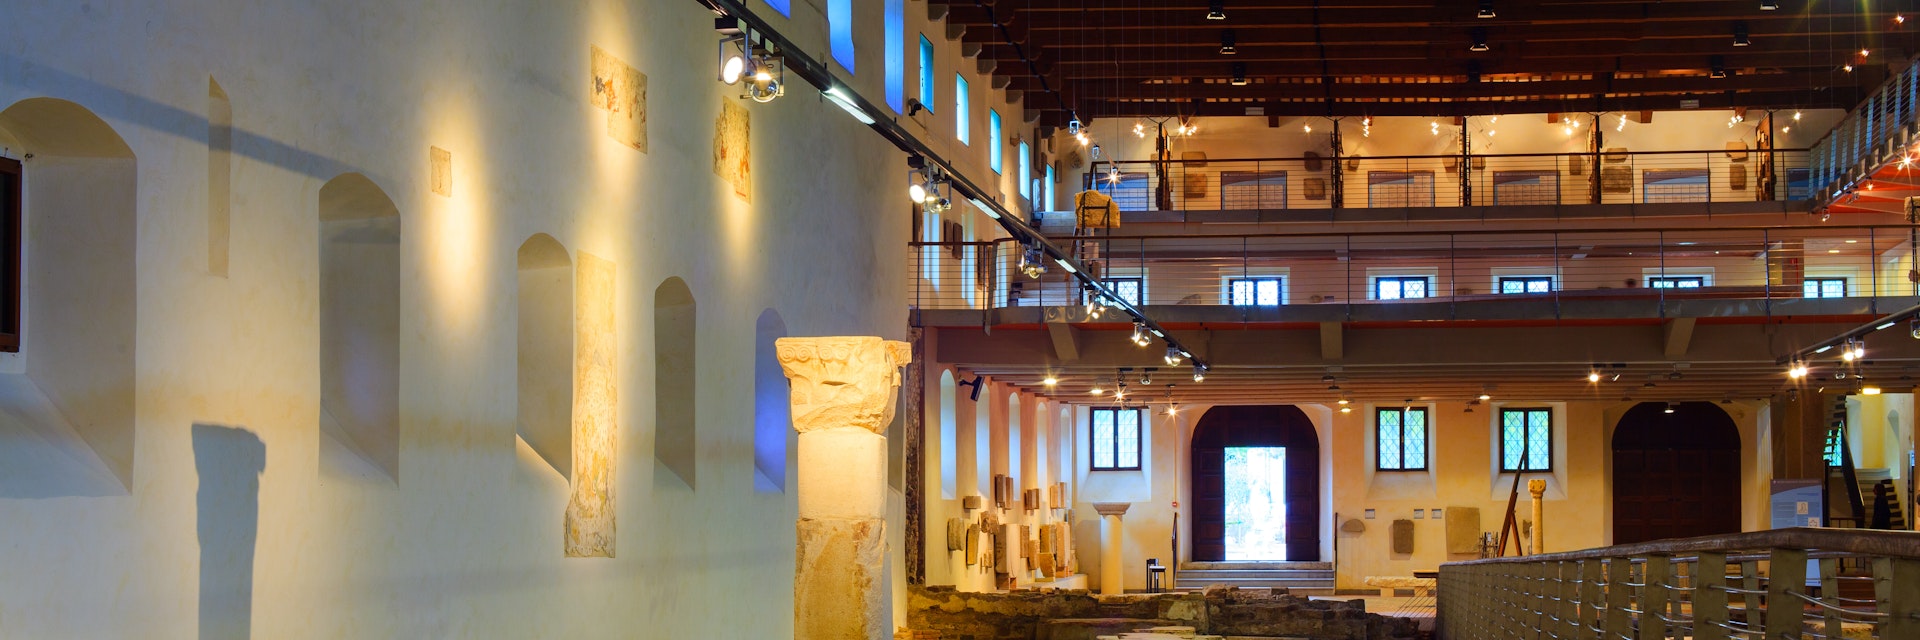 Aquileia National Archaeological Museum